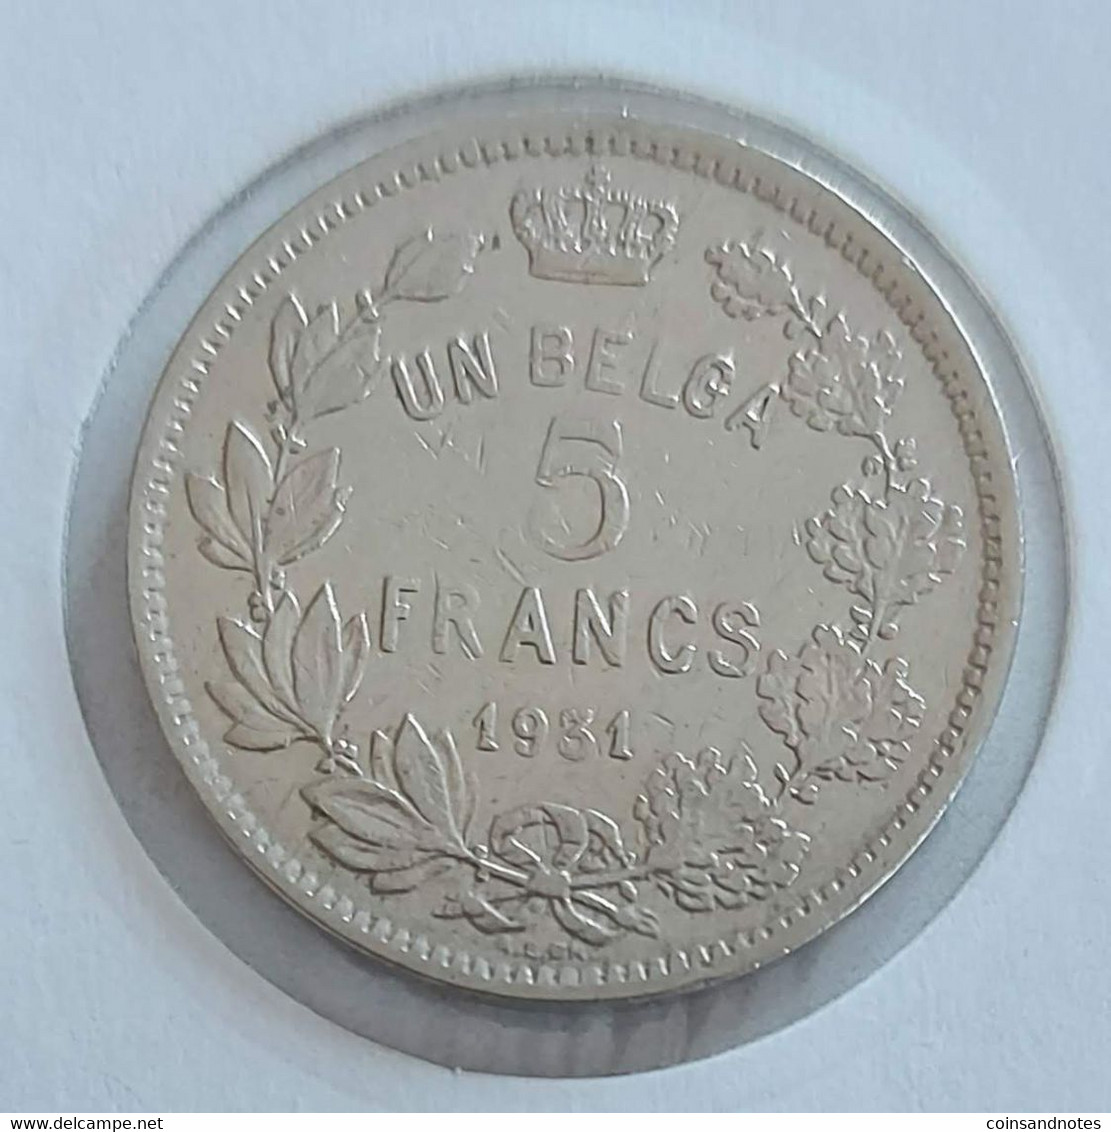 Belgium 1931 - 5 Francs/Un Belga FR - Albert I - Morin 384a - PR - 5 Francs & 1 Belga